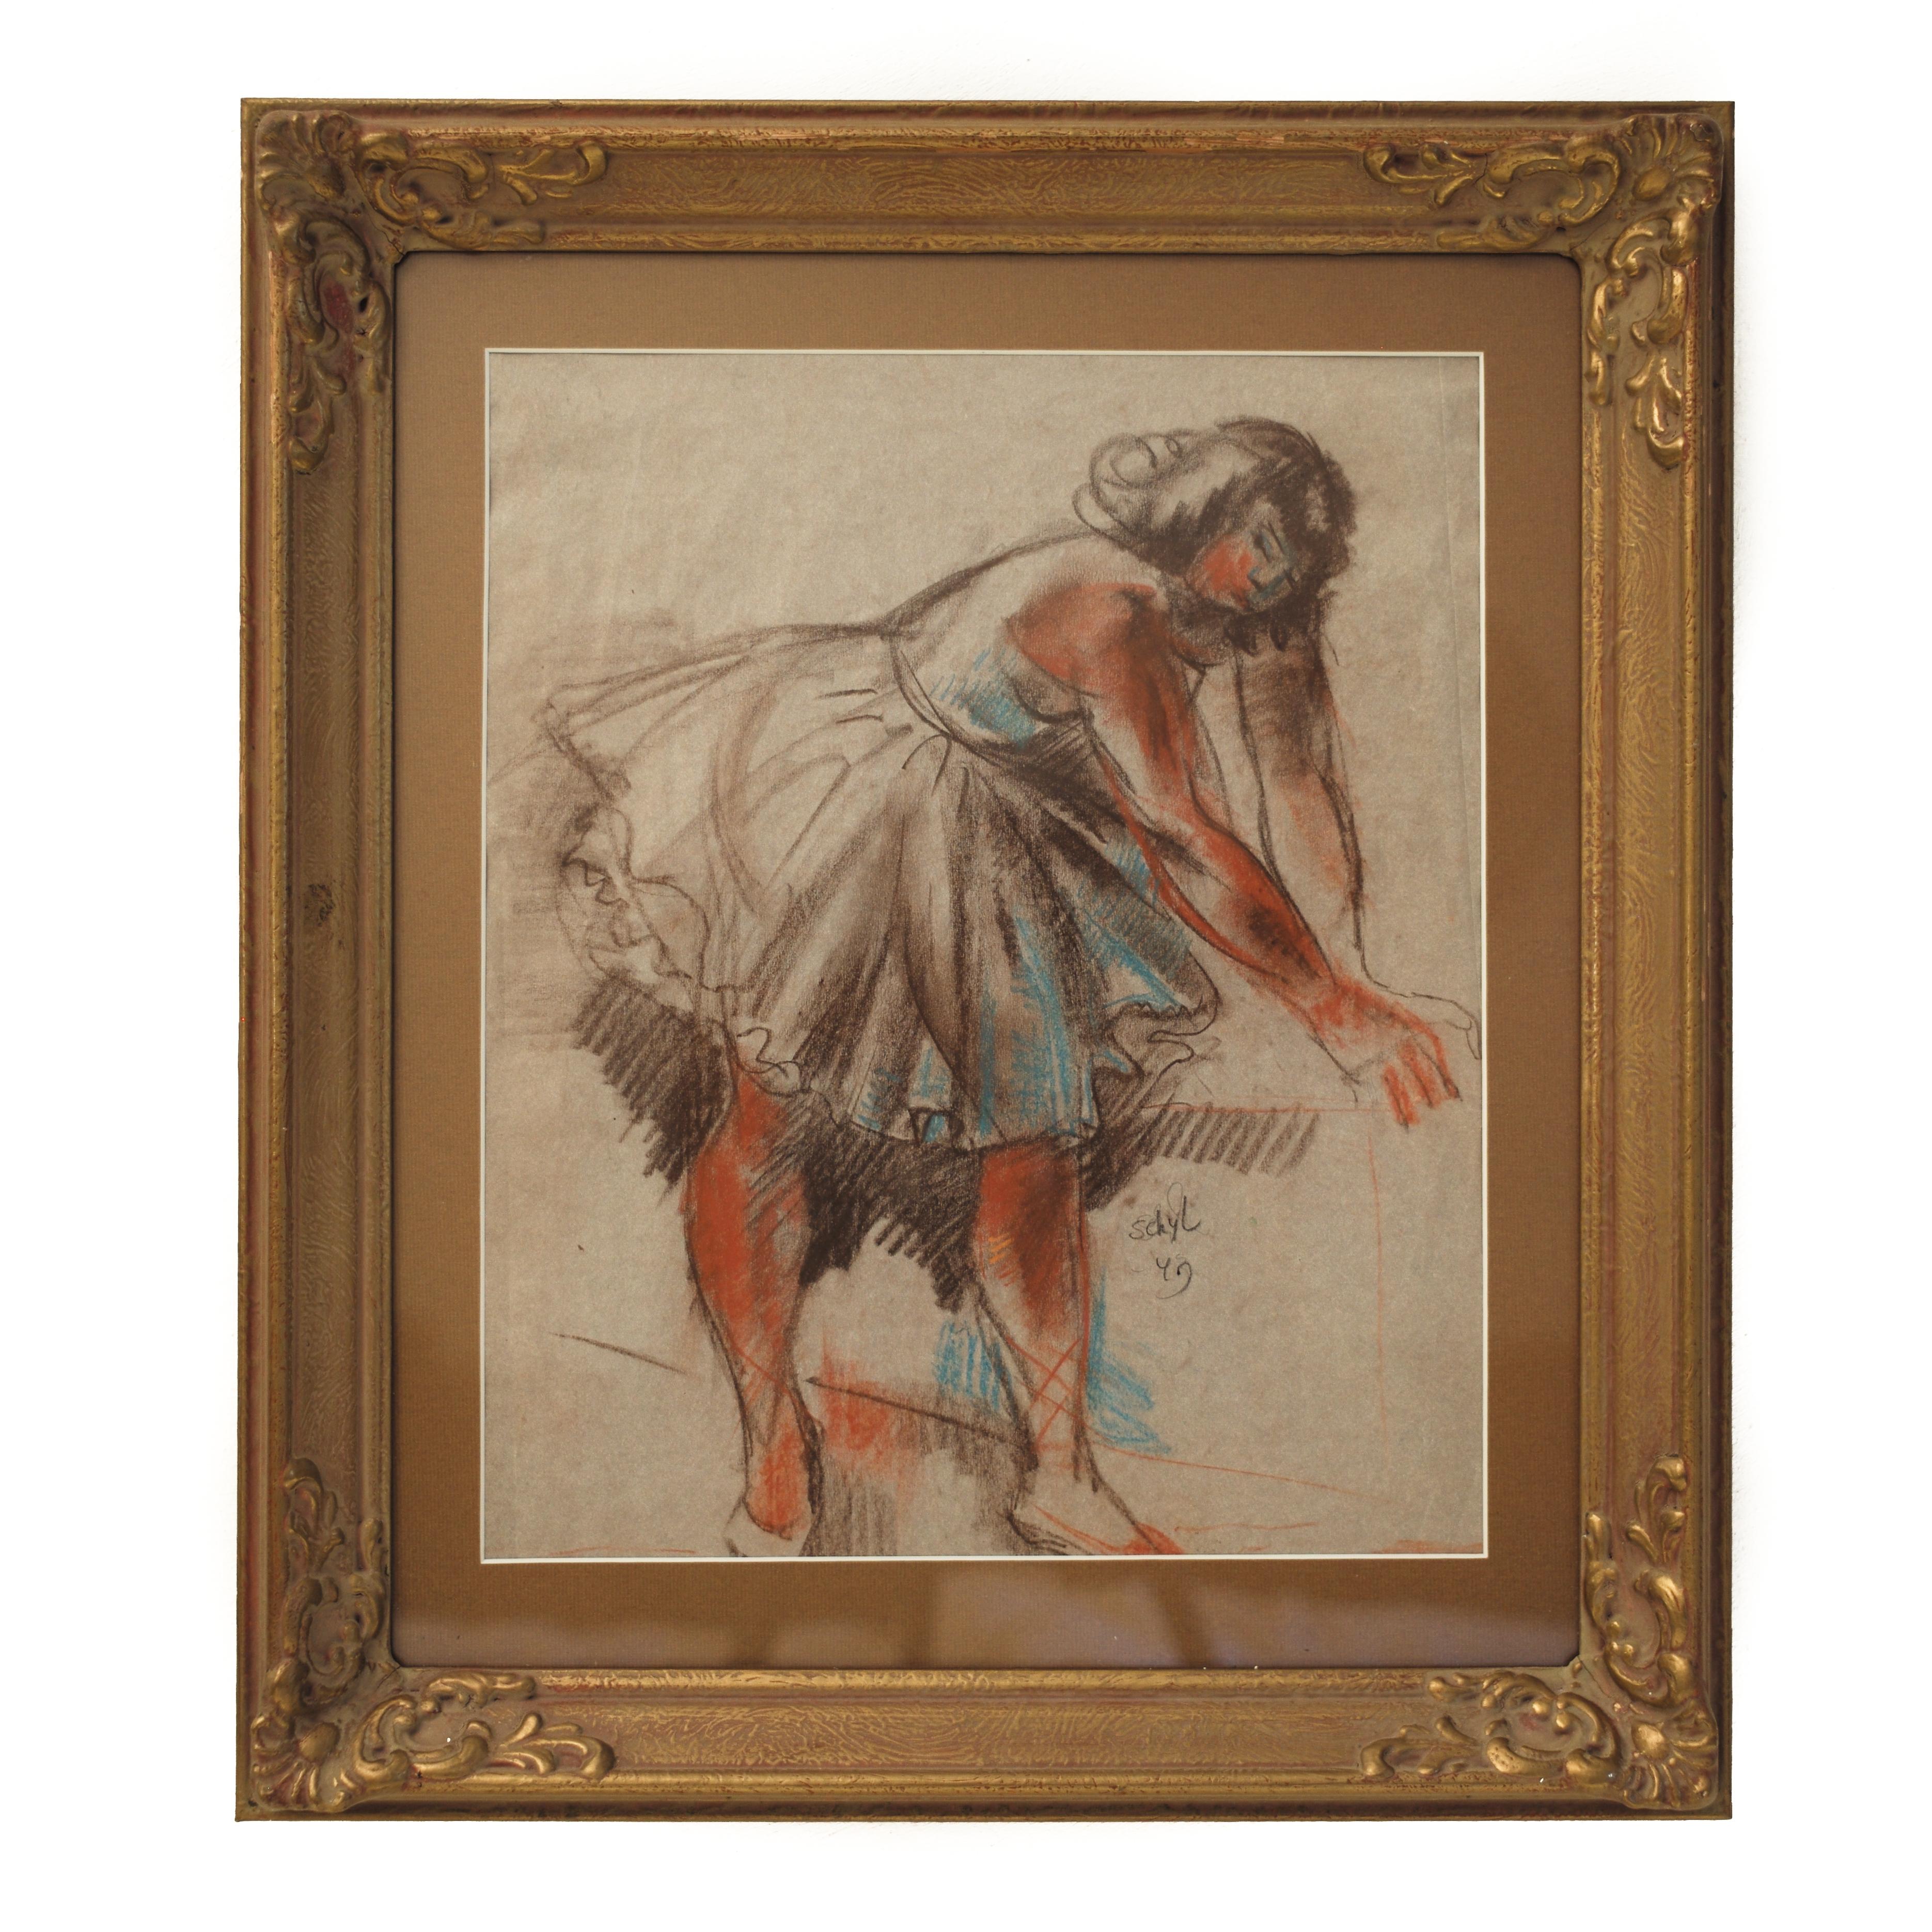 Ballett-Tänzer von Jules Schyl, Pastell auf Papier, Ähnlichkeiten mit Degas